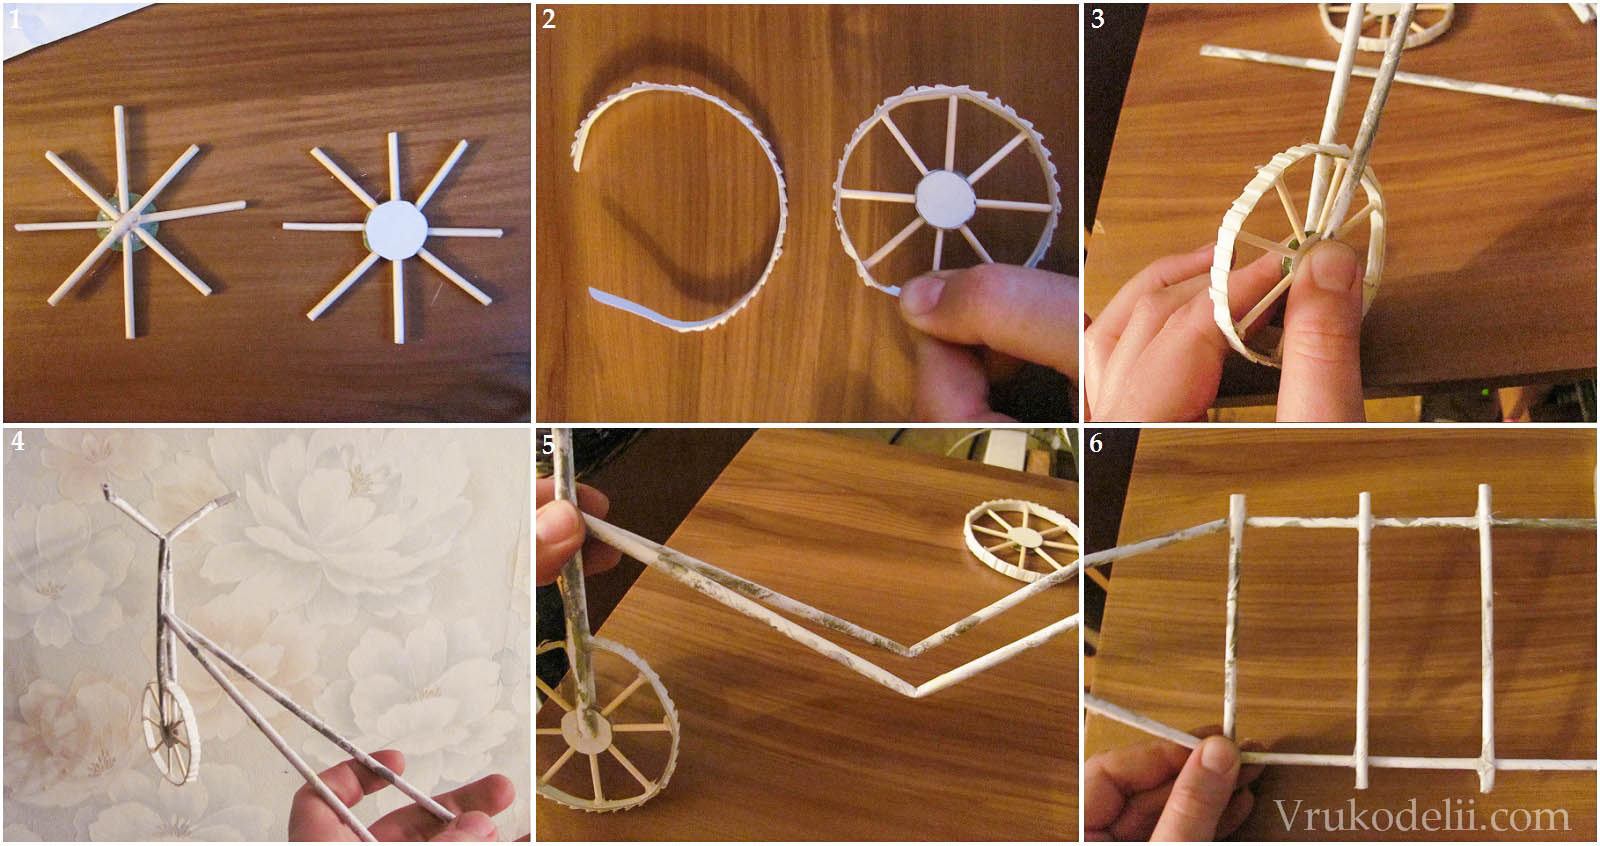 Виды дергунчиков с инструкциями как делать из картона и бумаги